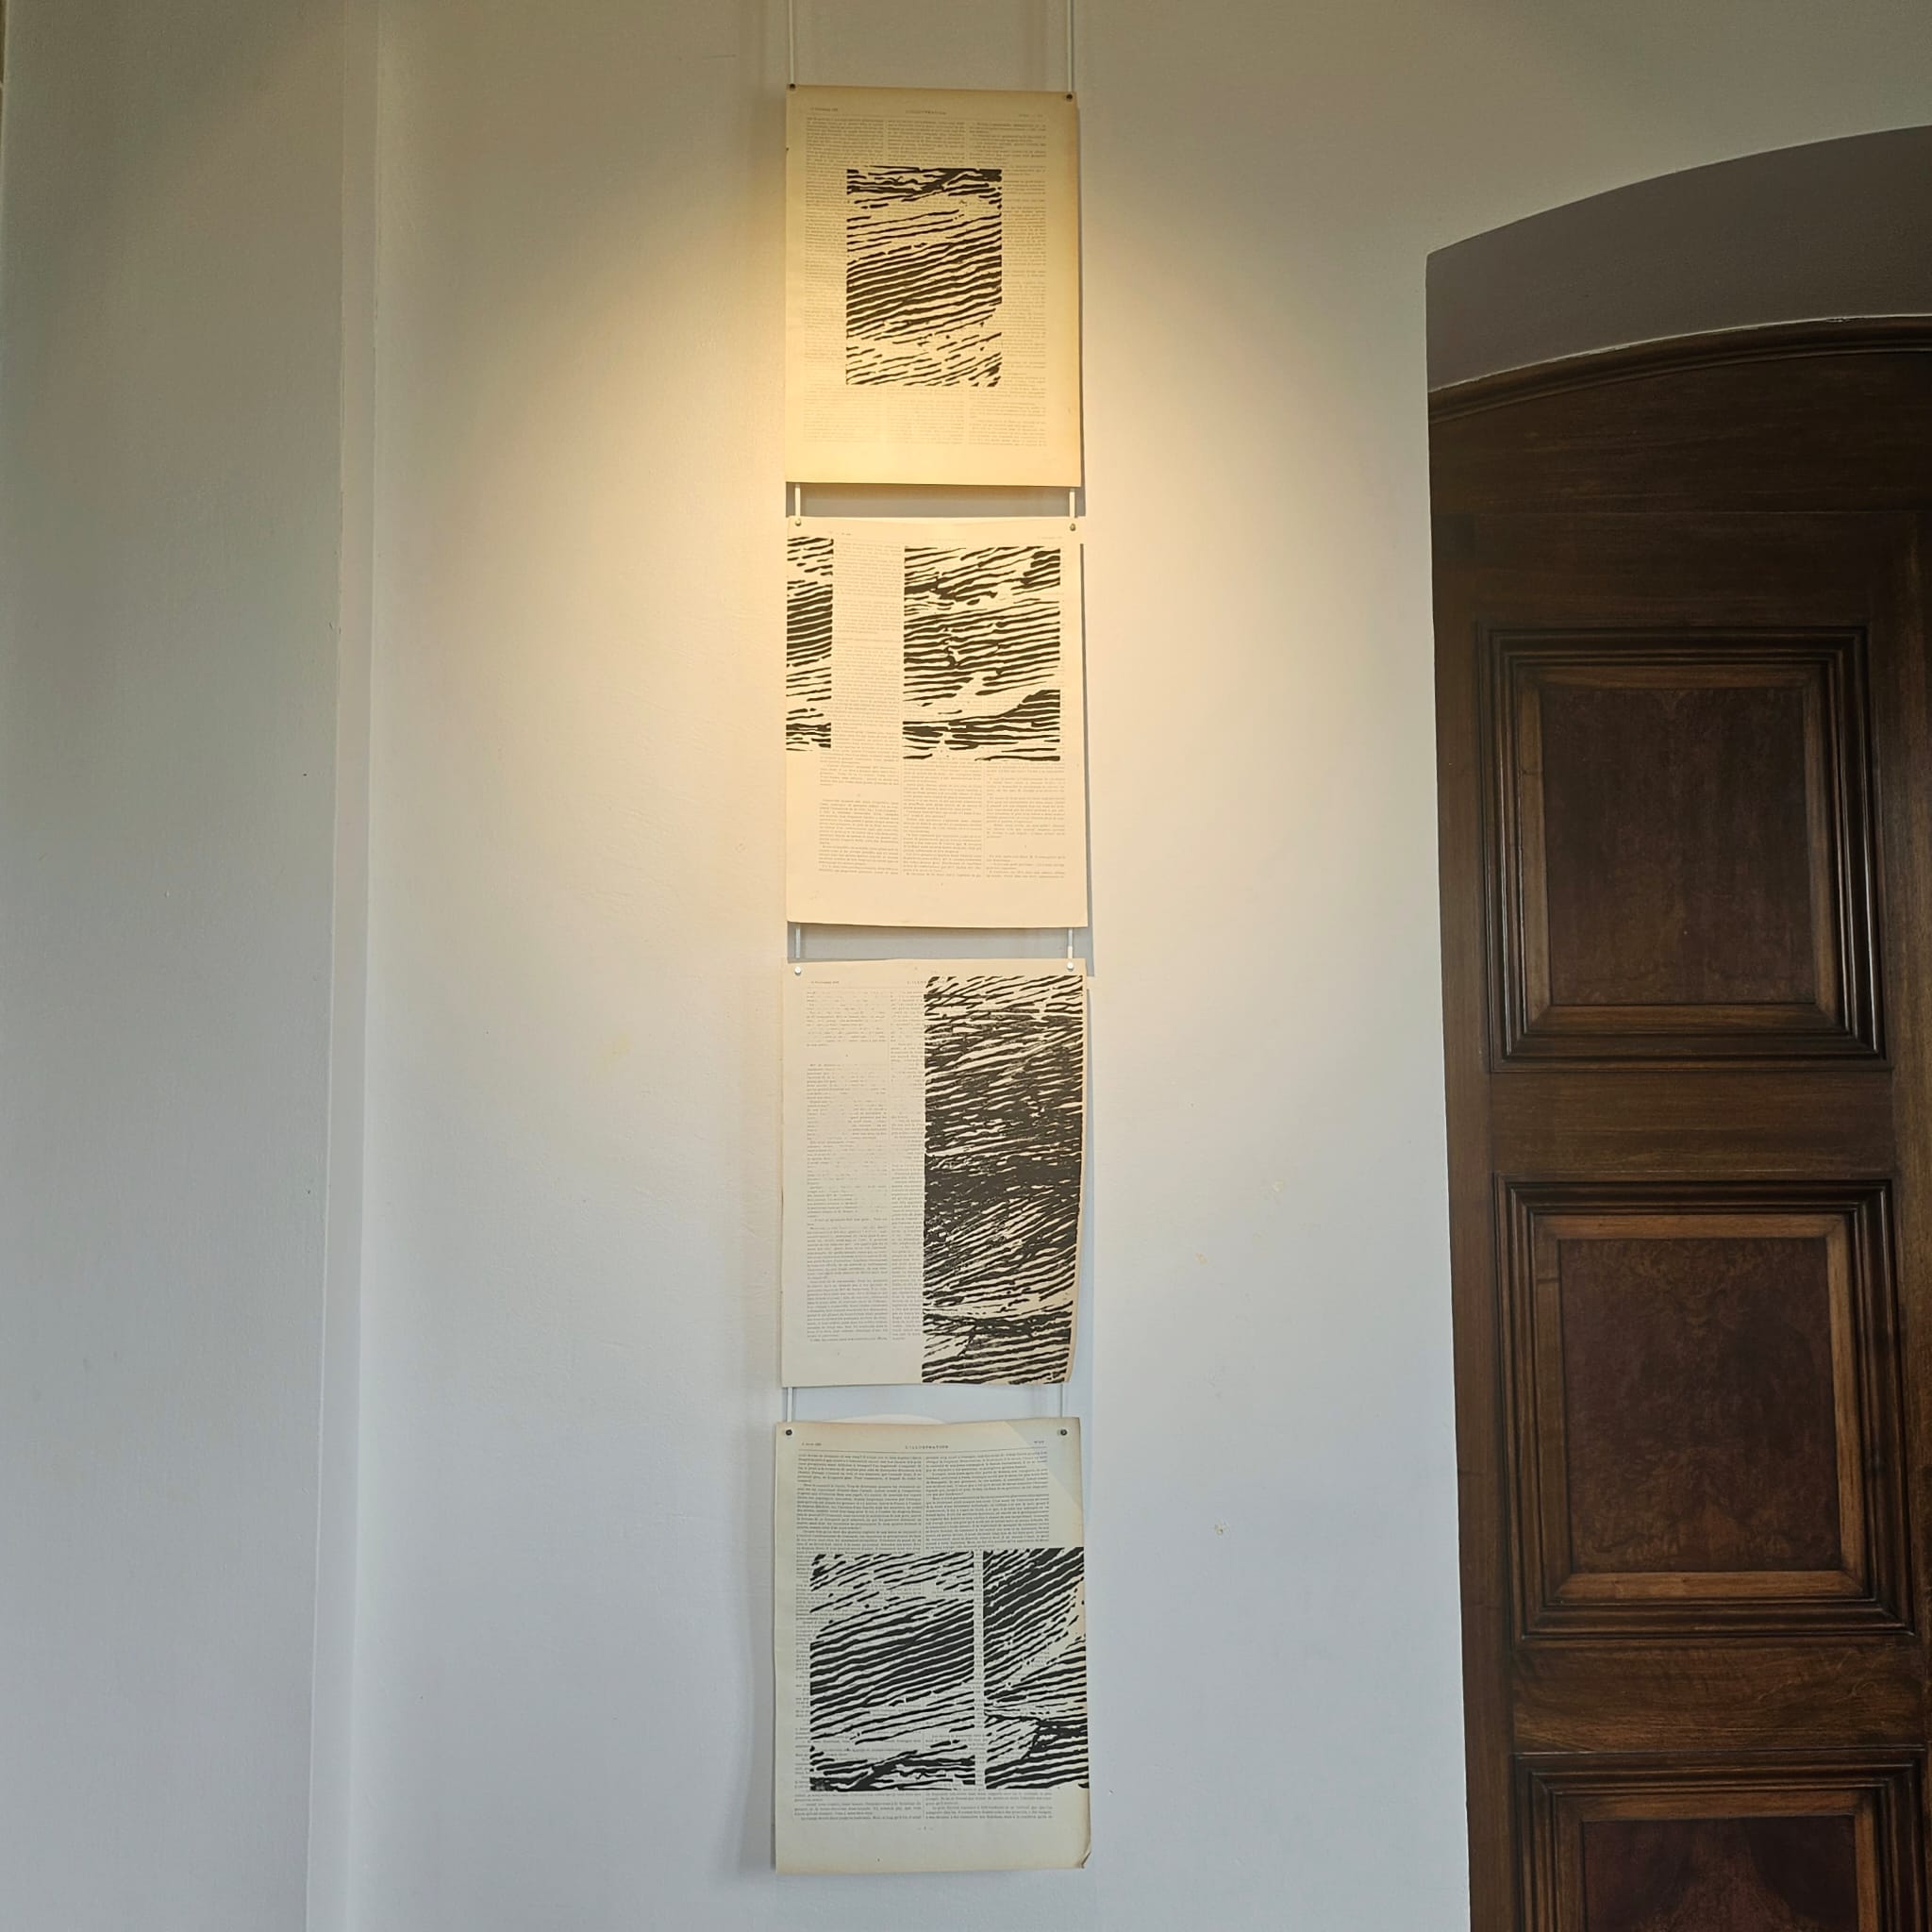 Série Infragravure, tirage de linogravure sur papier ancien, 29x40cm, F. Louis